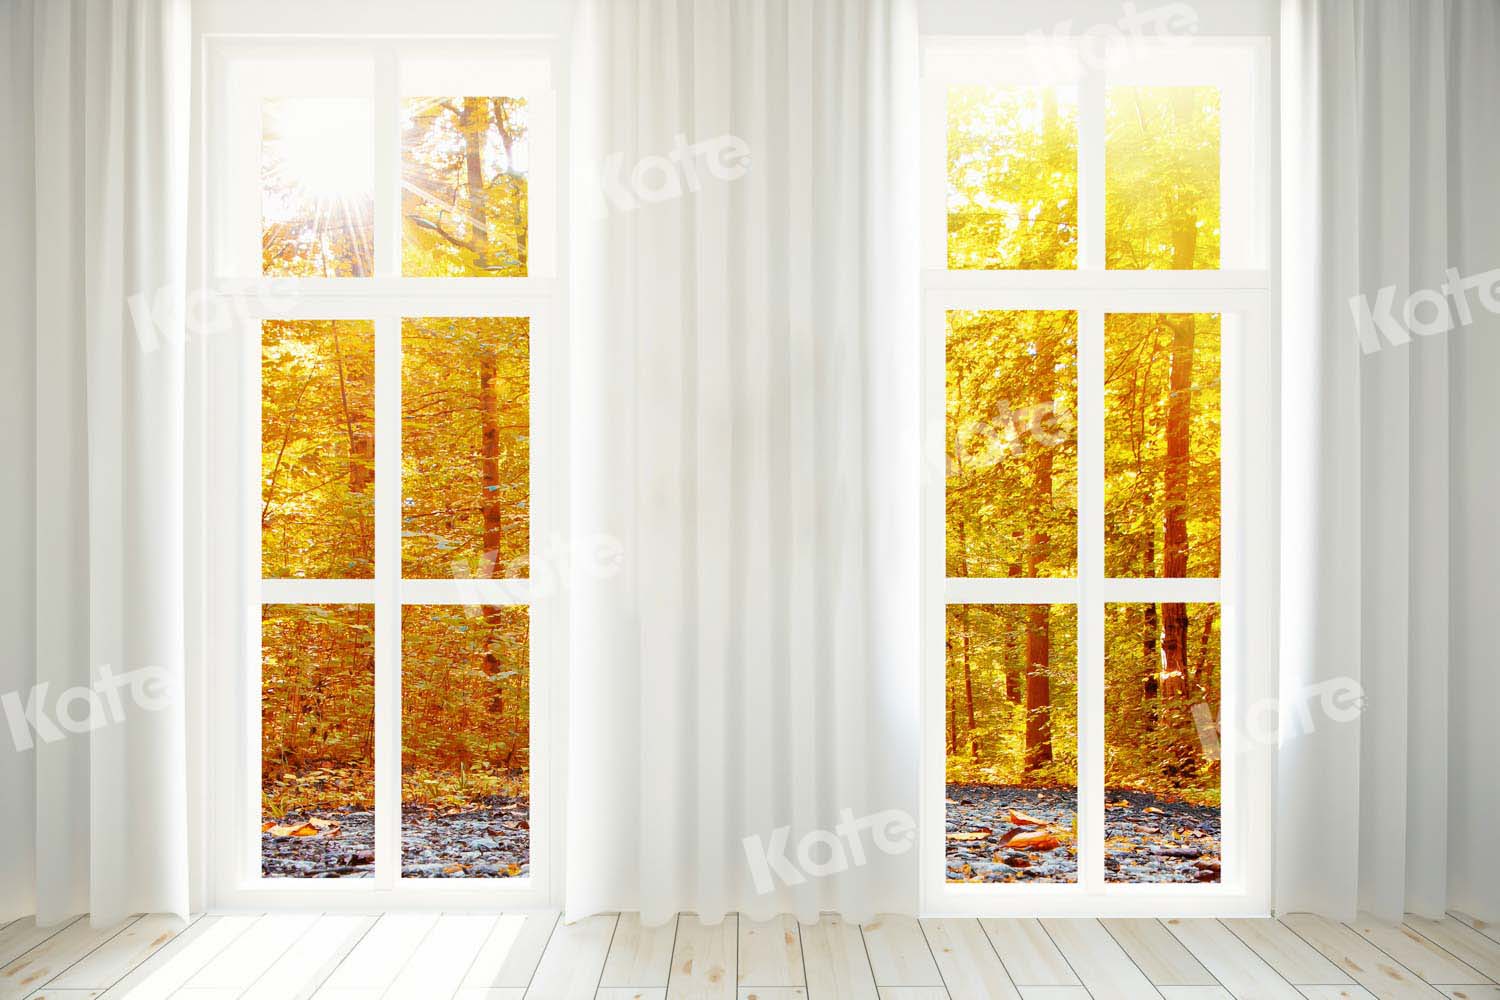 Kate Herbst Wald Fenster Hintergrund für Fotografie von Chain Photography